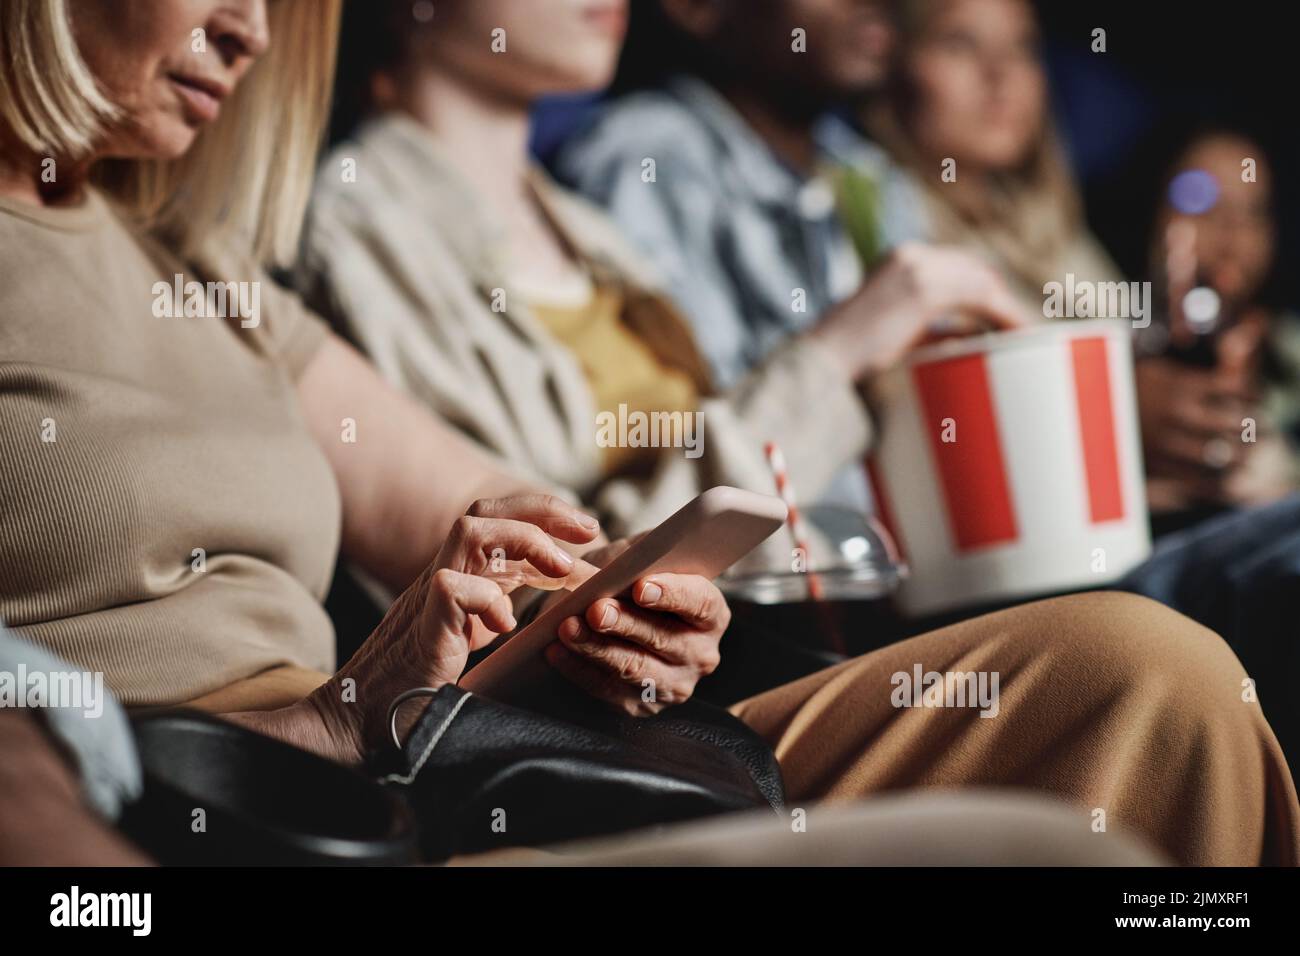 Enfoque selectivo de mujeres caucásicas maduras que navegan por Internet en el smartphone mientras ven una película en el cine Foto de stock